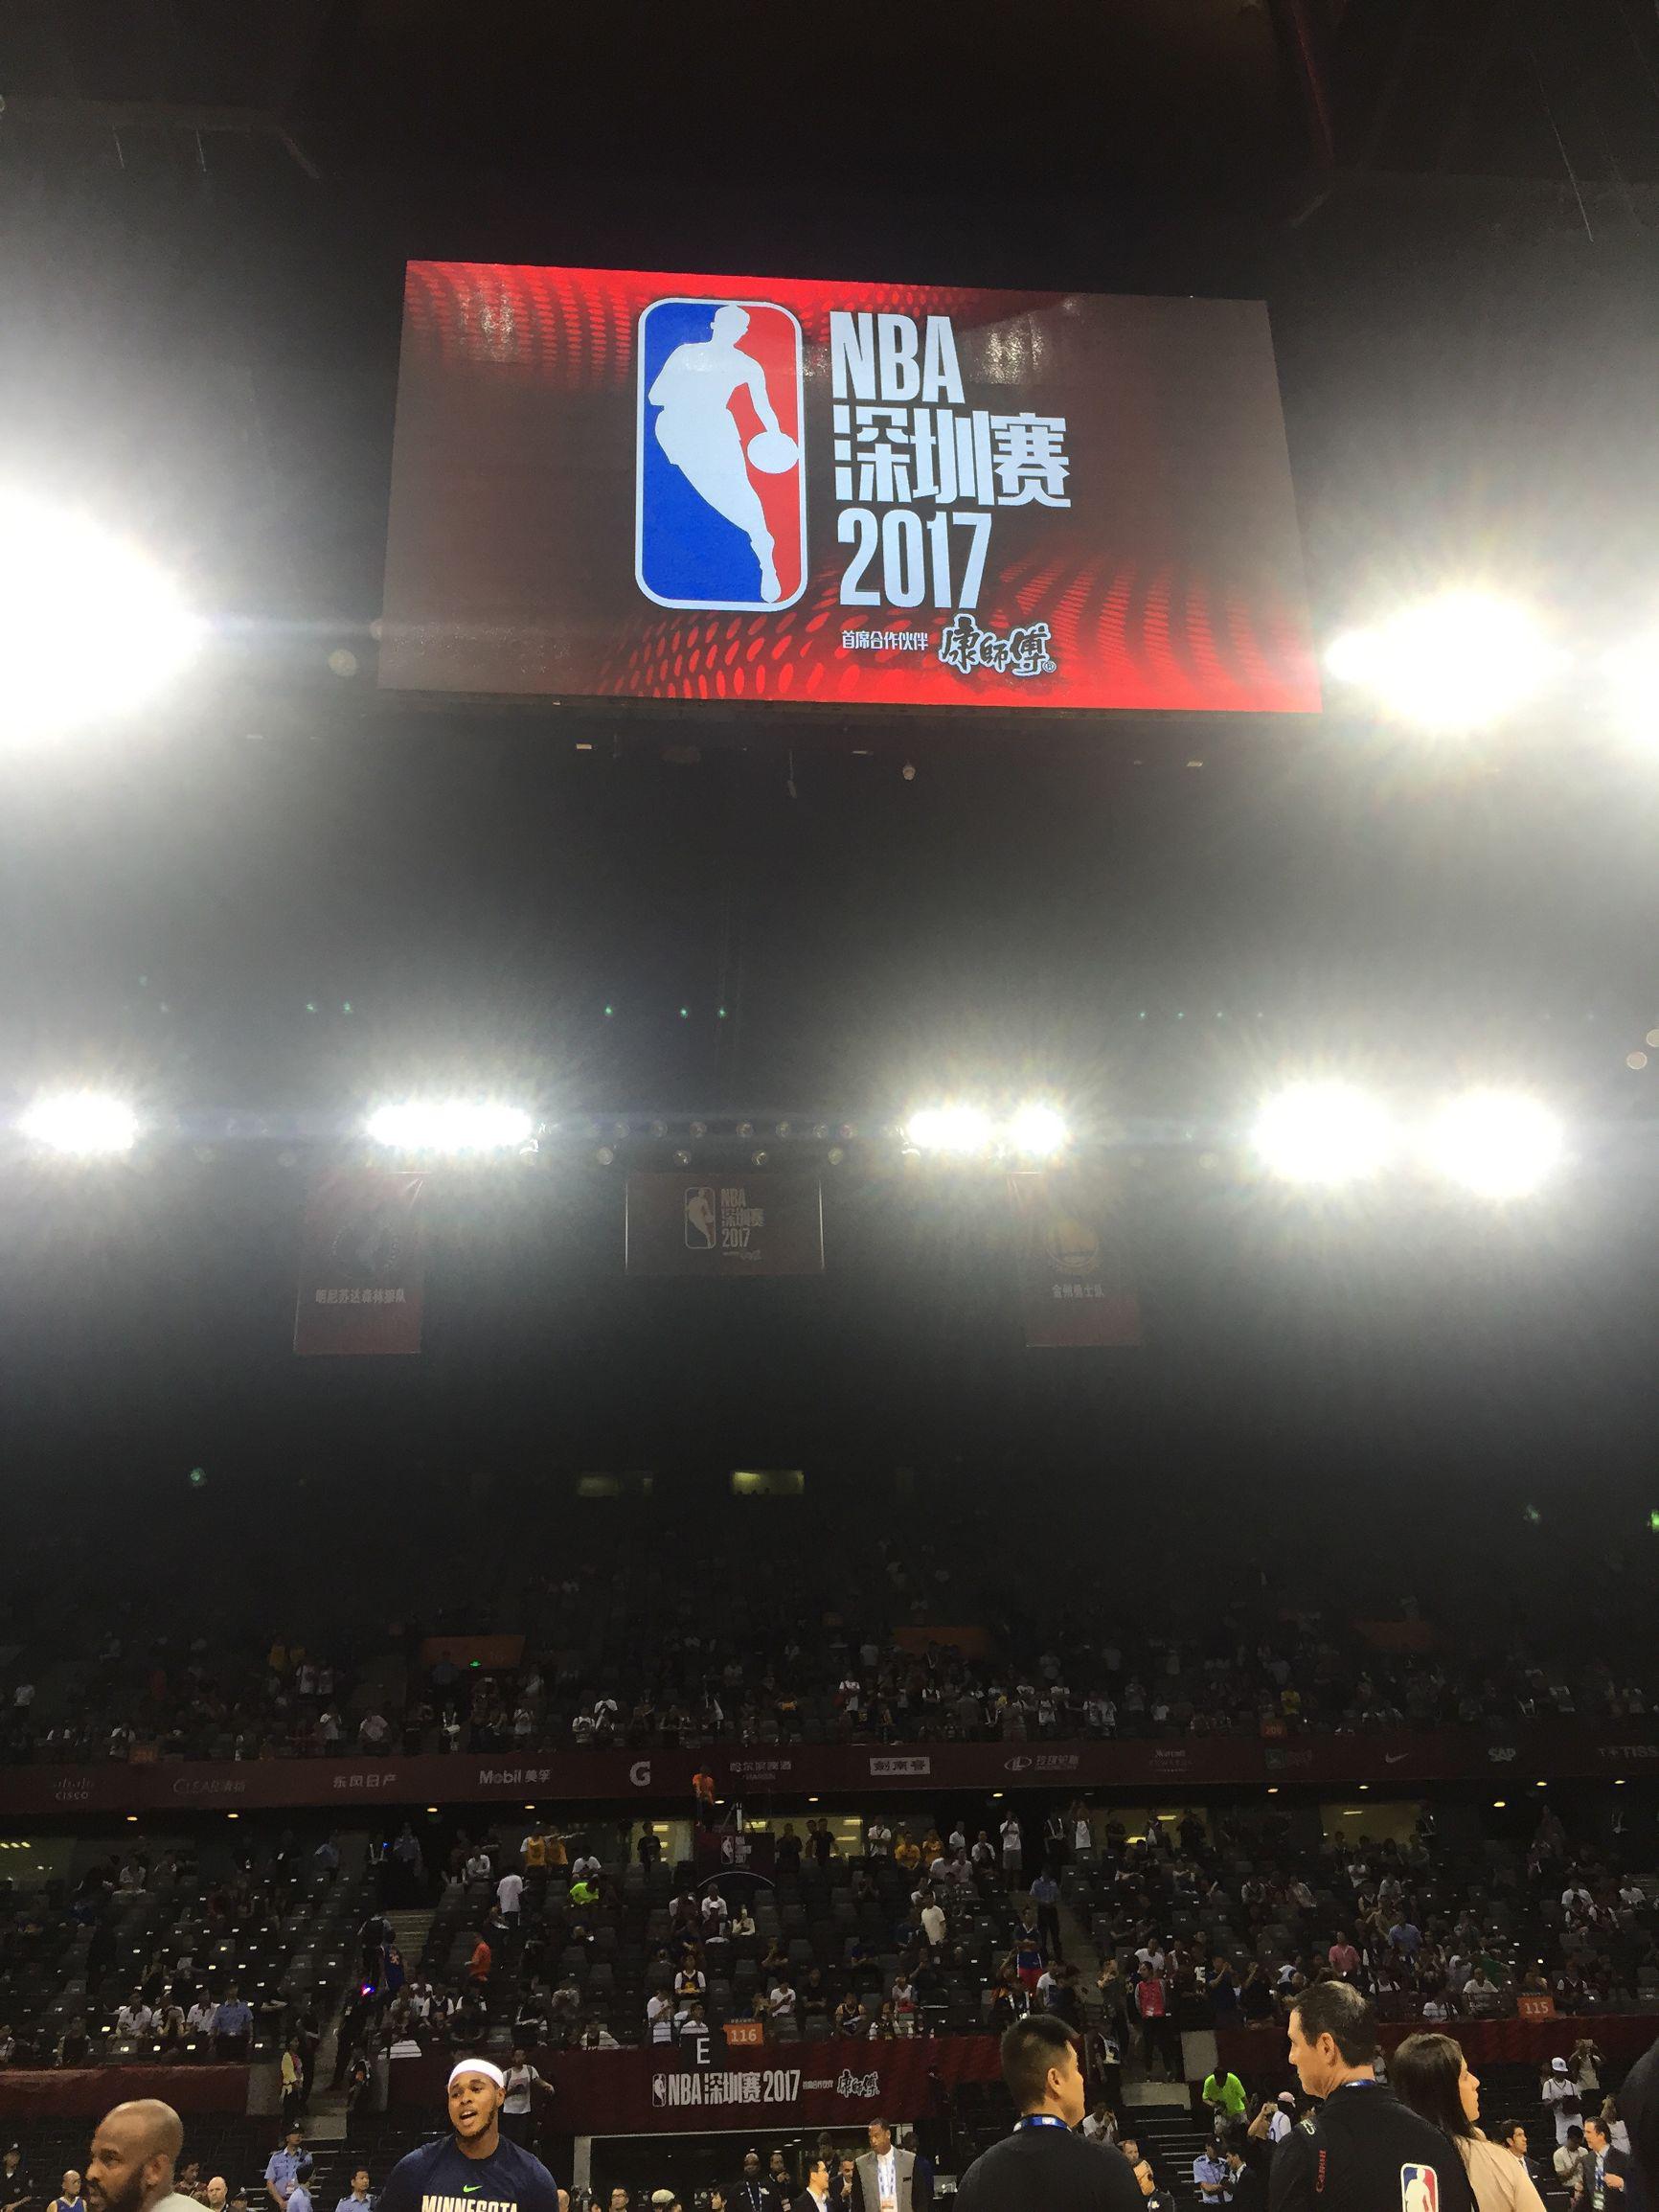 207nba中国赛 2017年NBA中国赛(2)